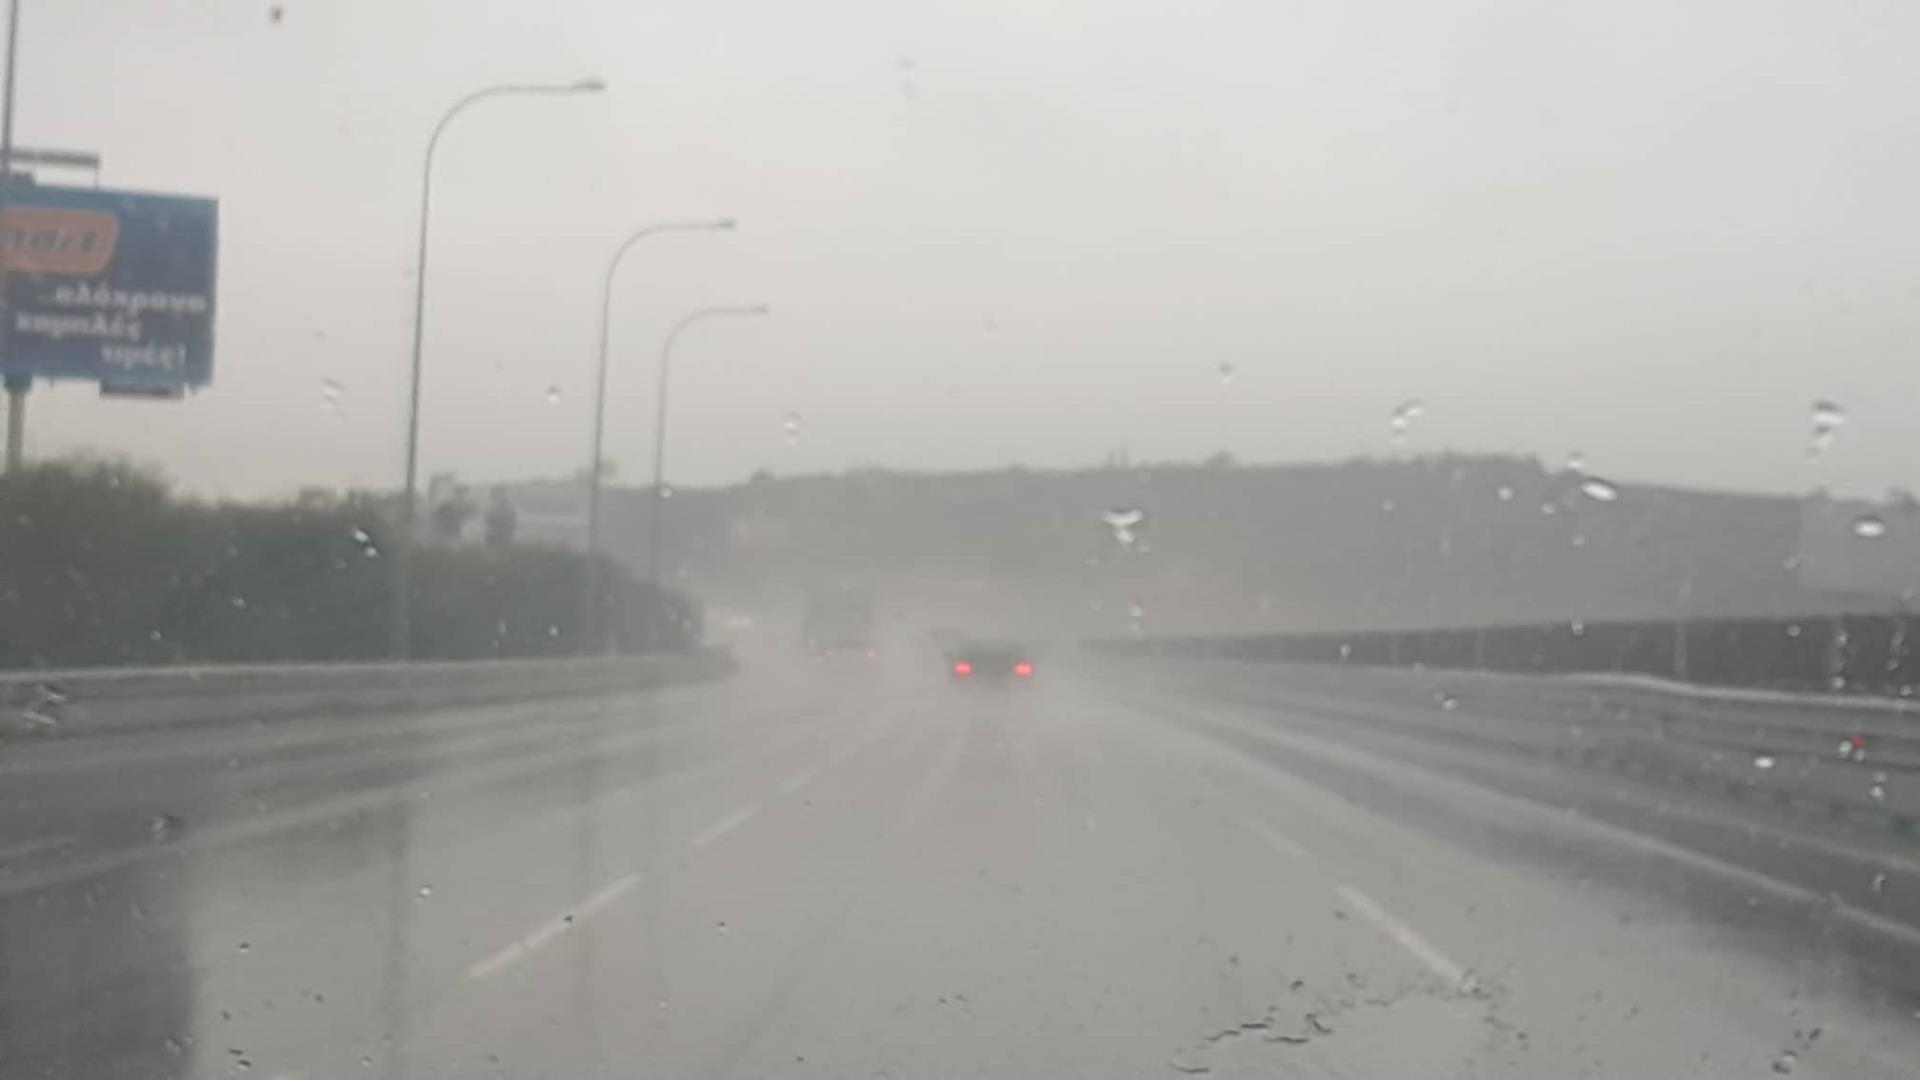 Δυνατοί άνεμοι και έντονη βροχόπτωση στον αυτοκινητόδρομο Λάρνακας – Λεμεσού: Προσοχή συστήνει η Αστυνομία